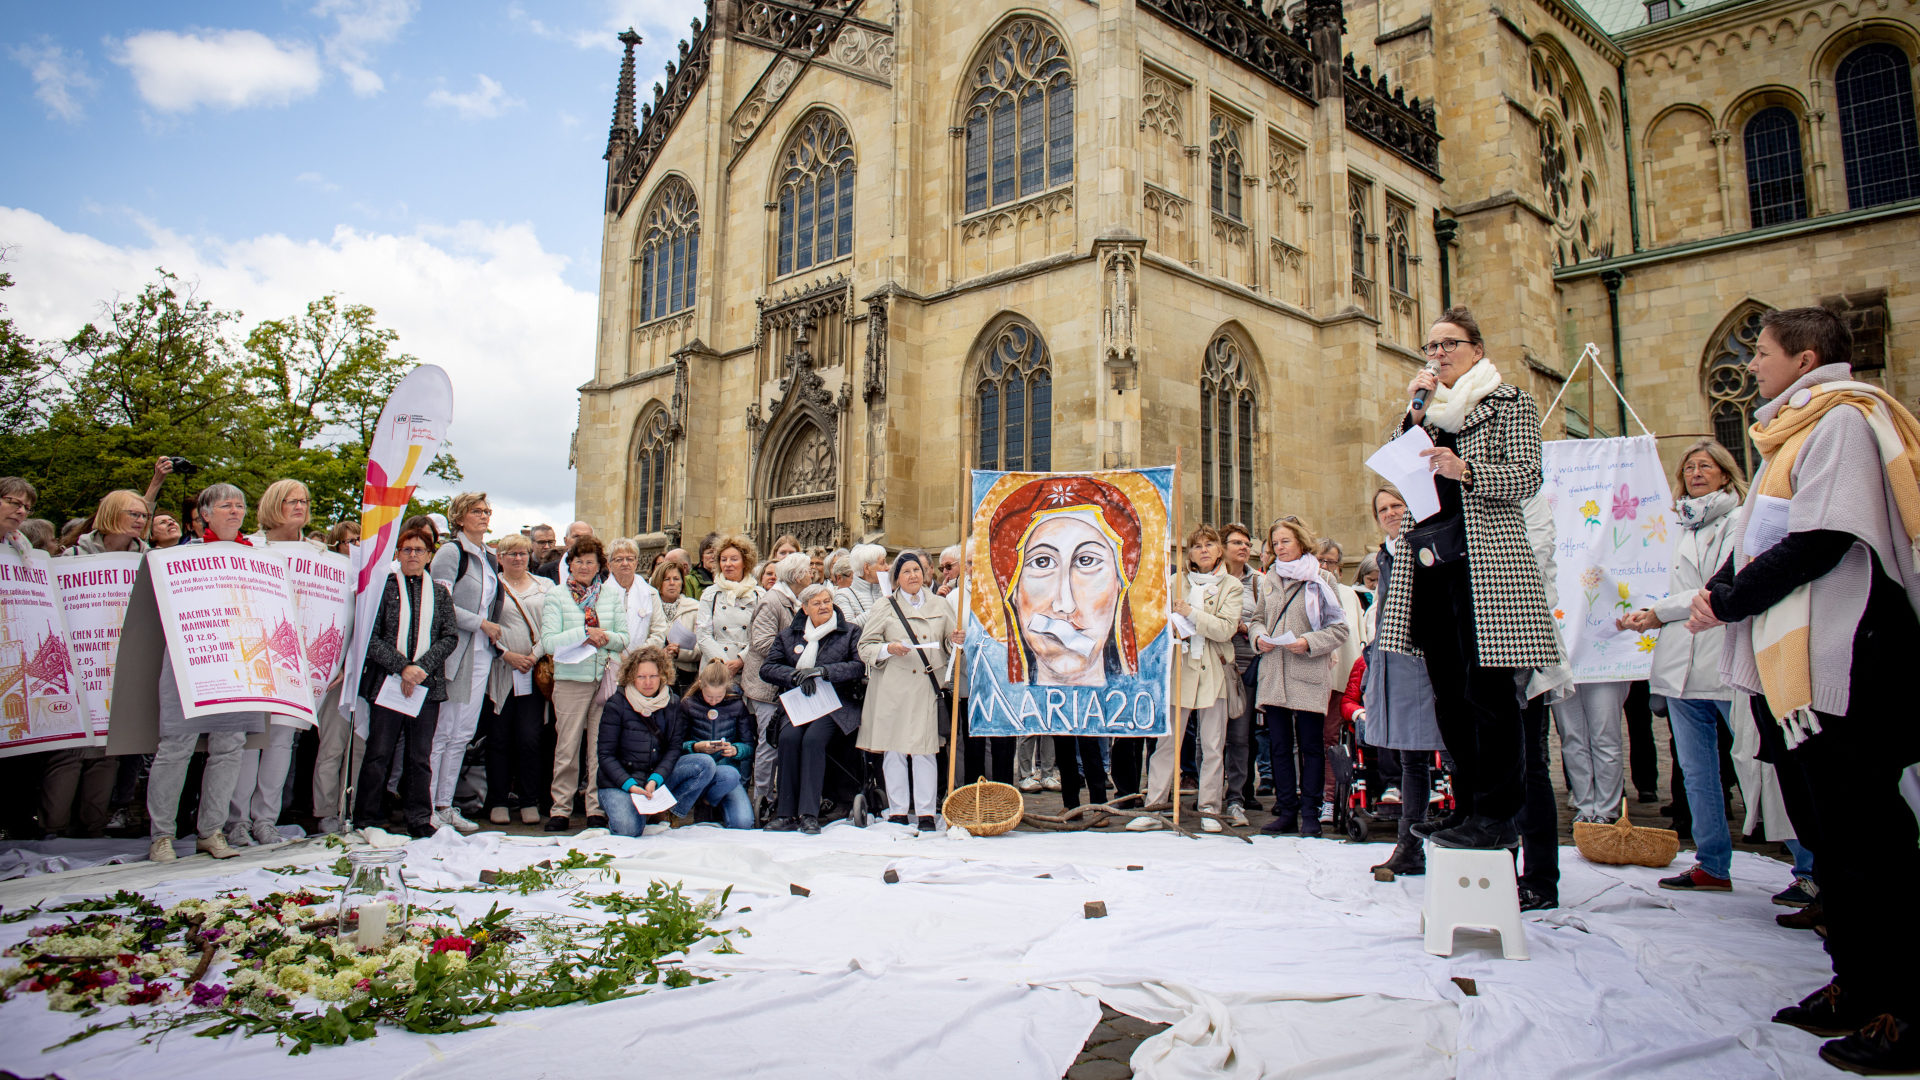 Mahnwache der Initiative "Maria 2.0" in Münster